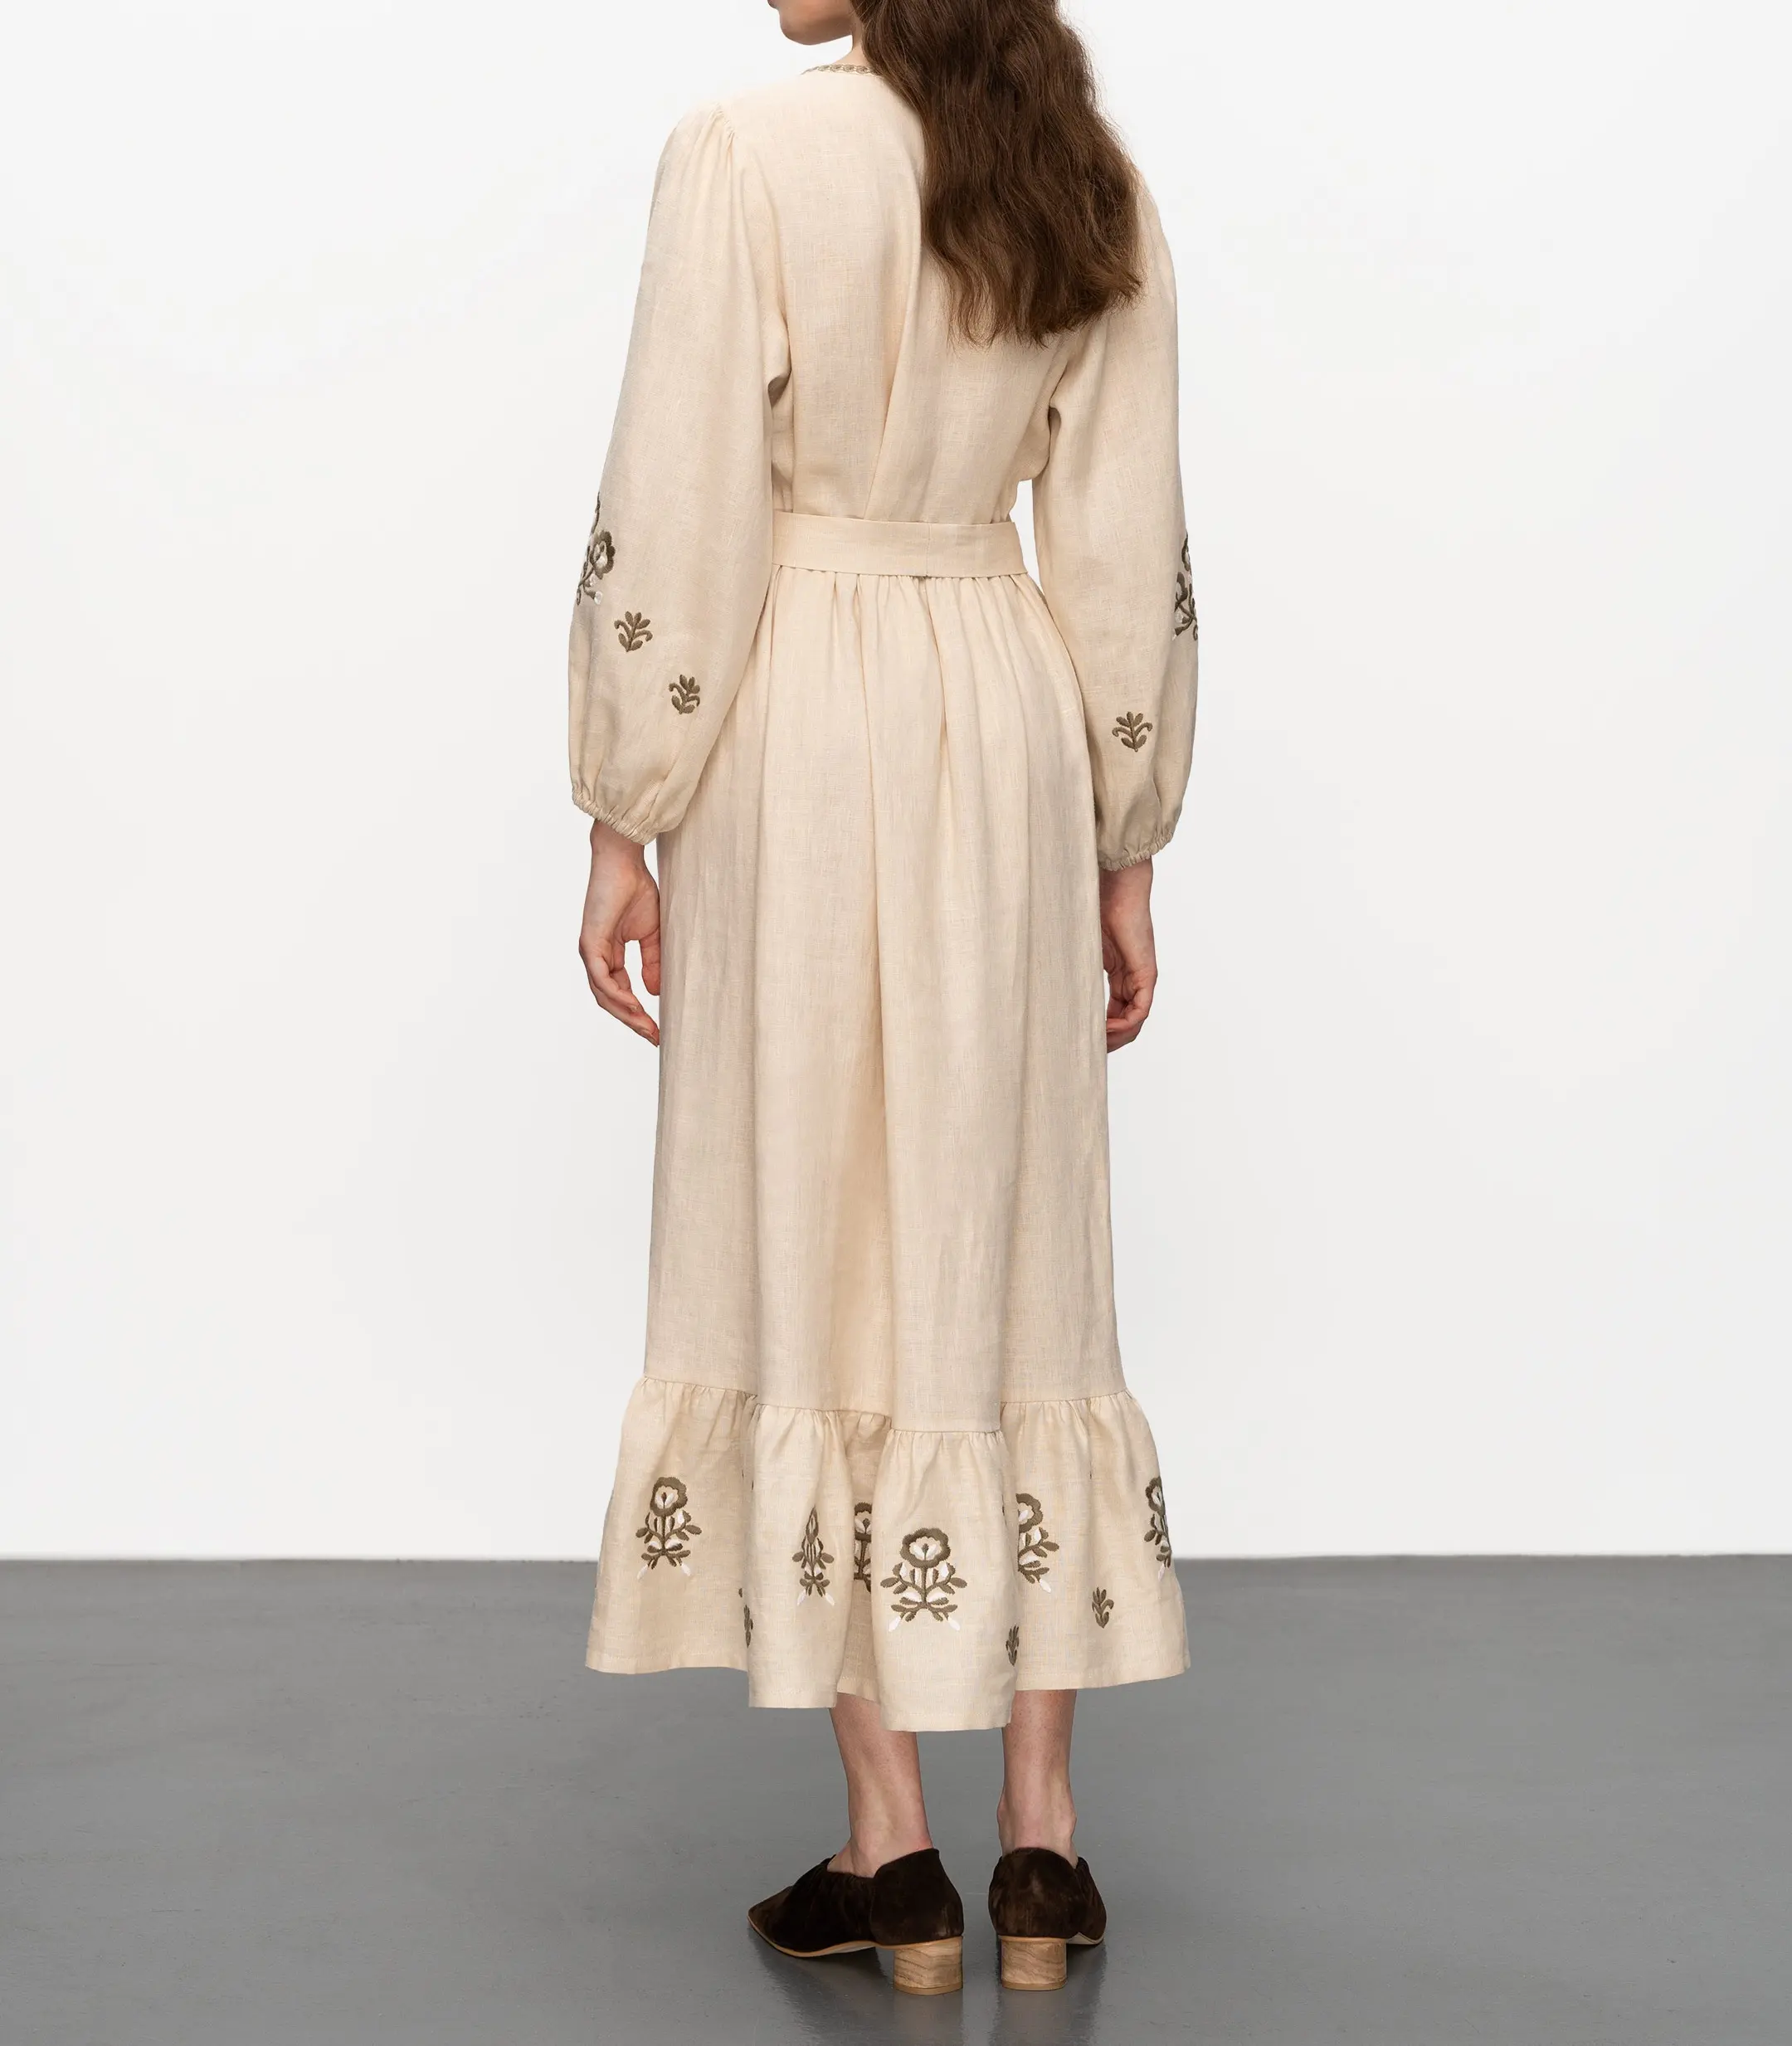 Vestido maxi feminino bordado de algodão e linho casual com babado longo para mulheres, venda imperdível